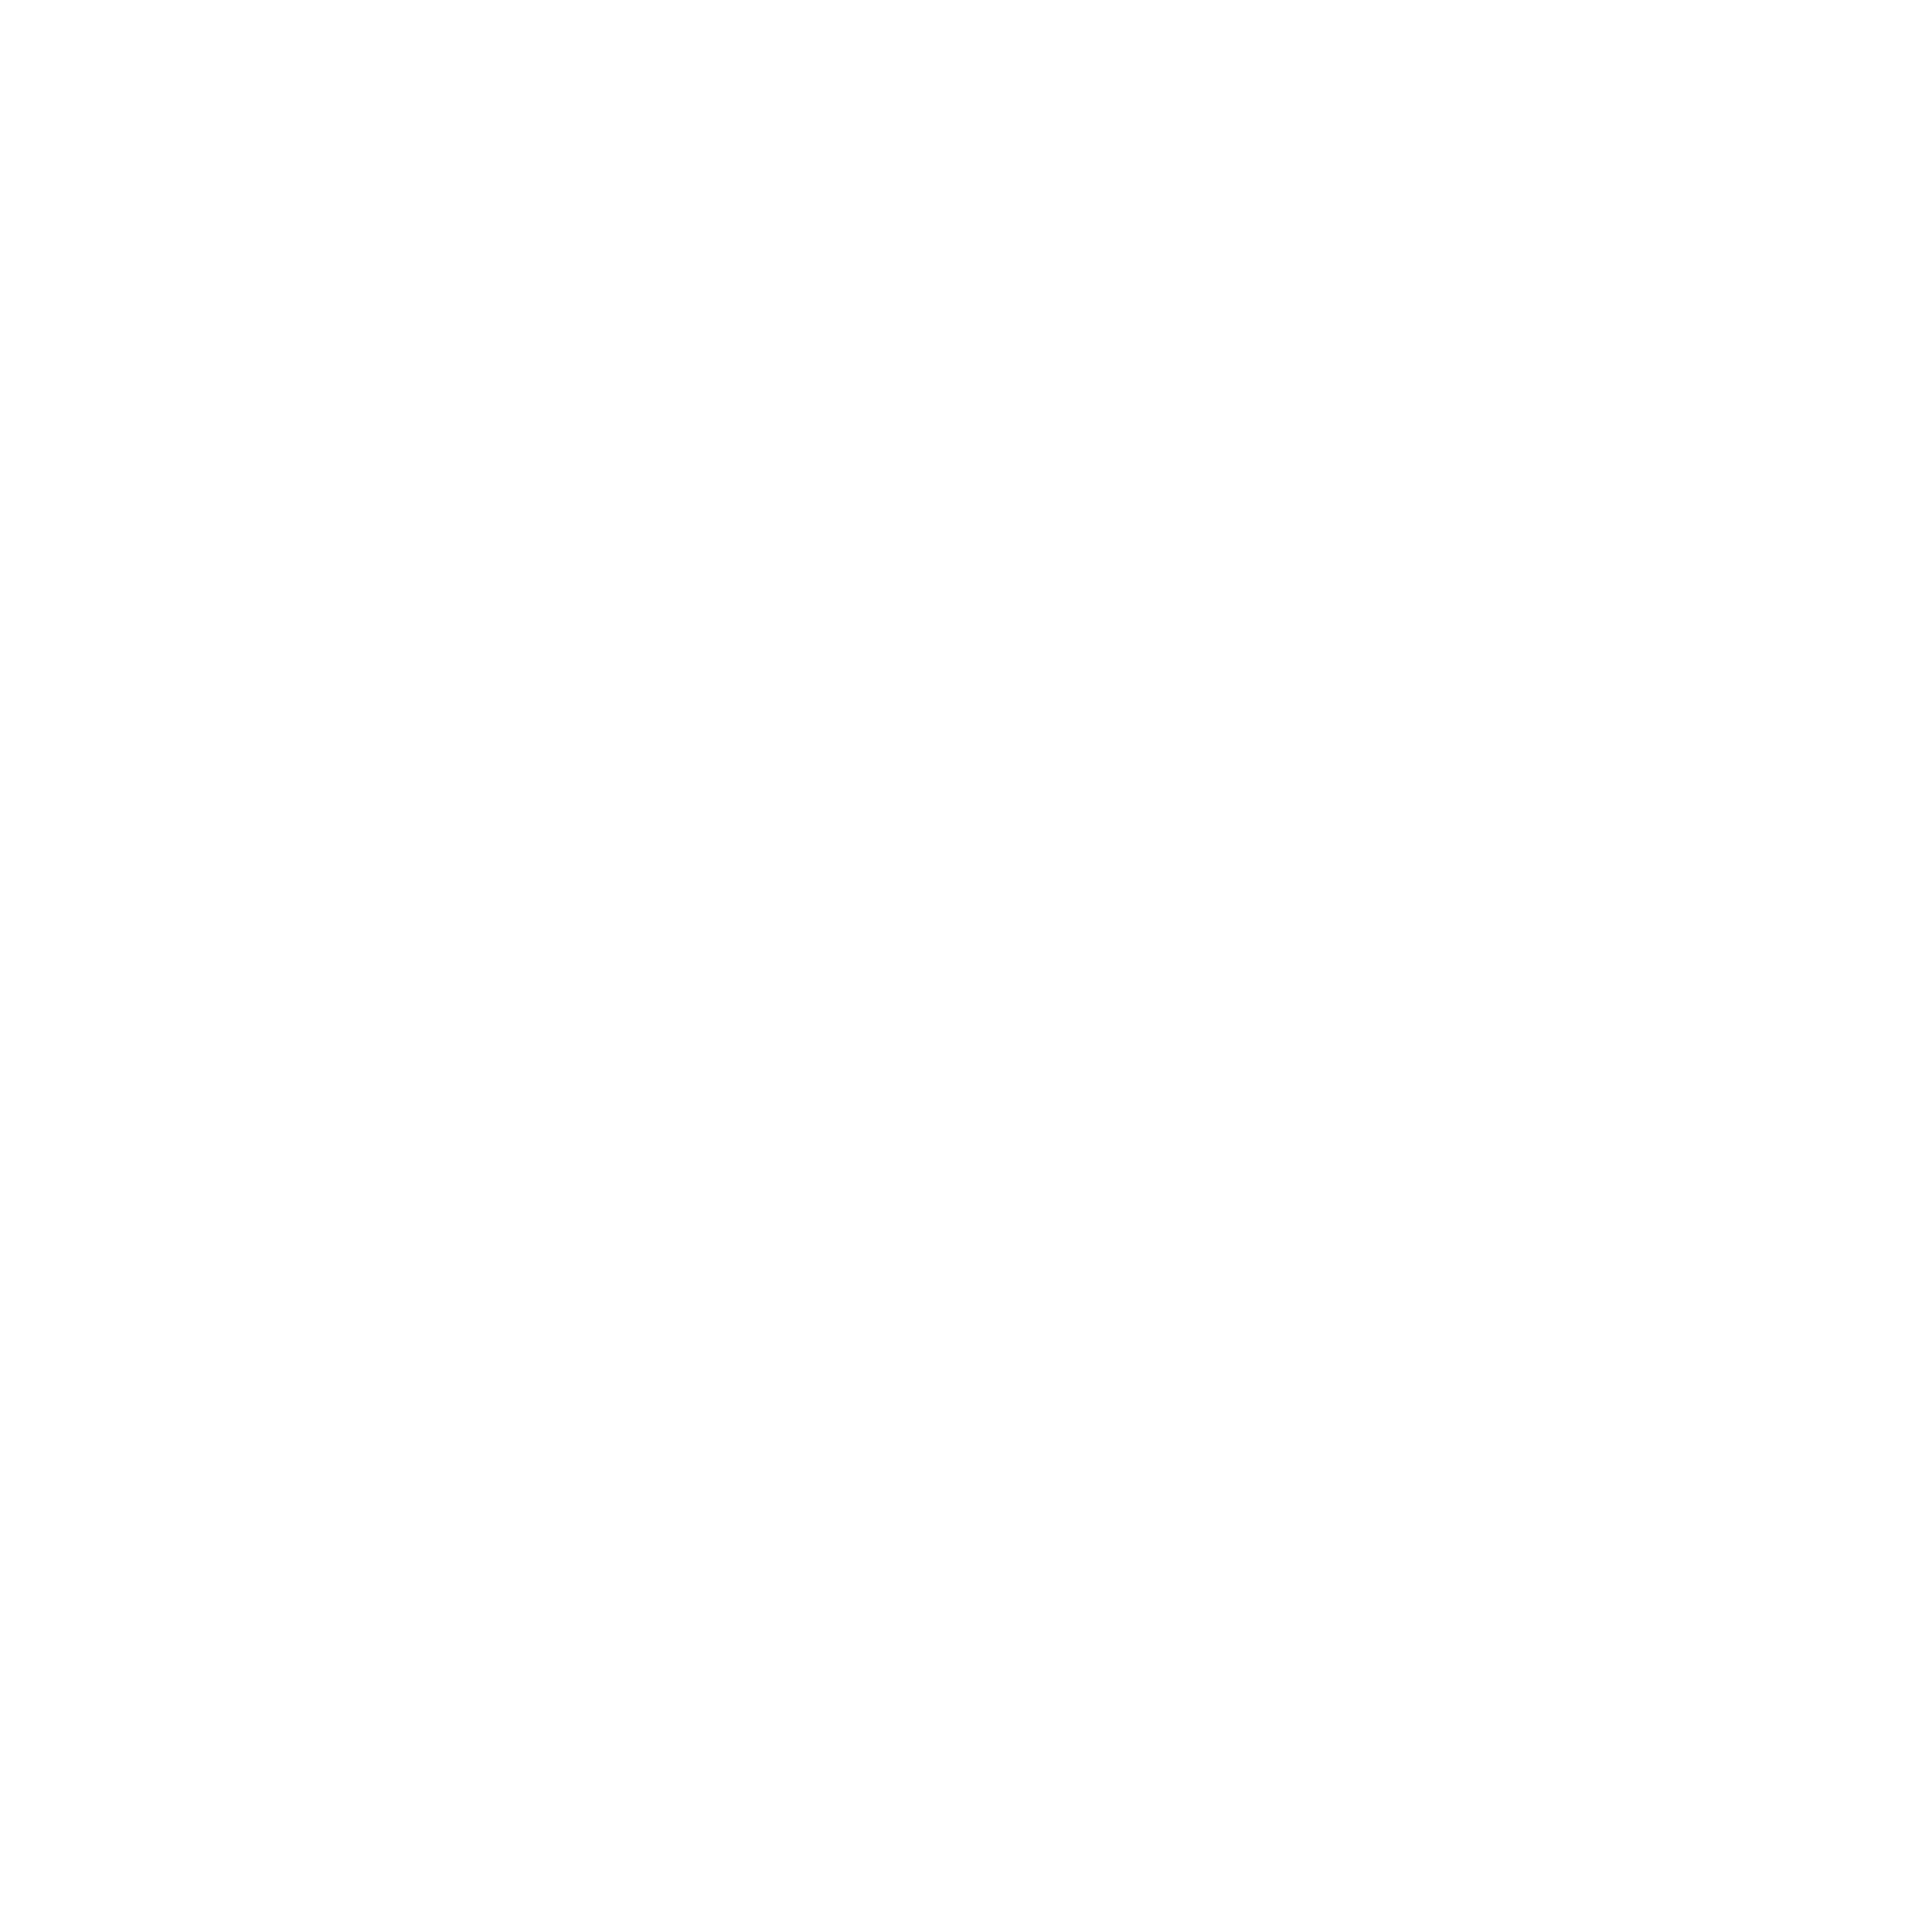 bgw logo white